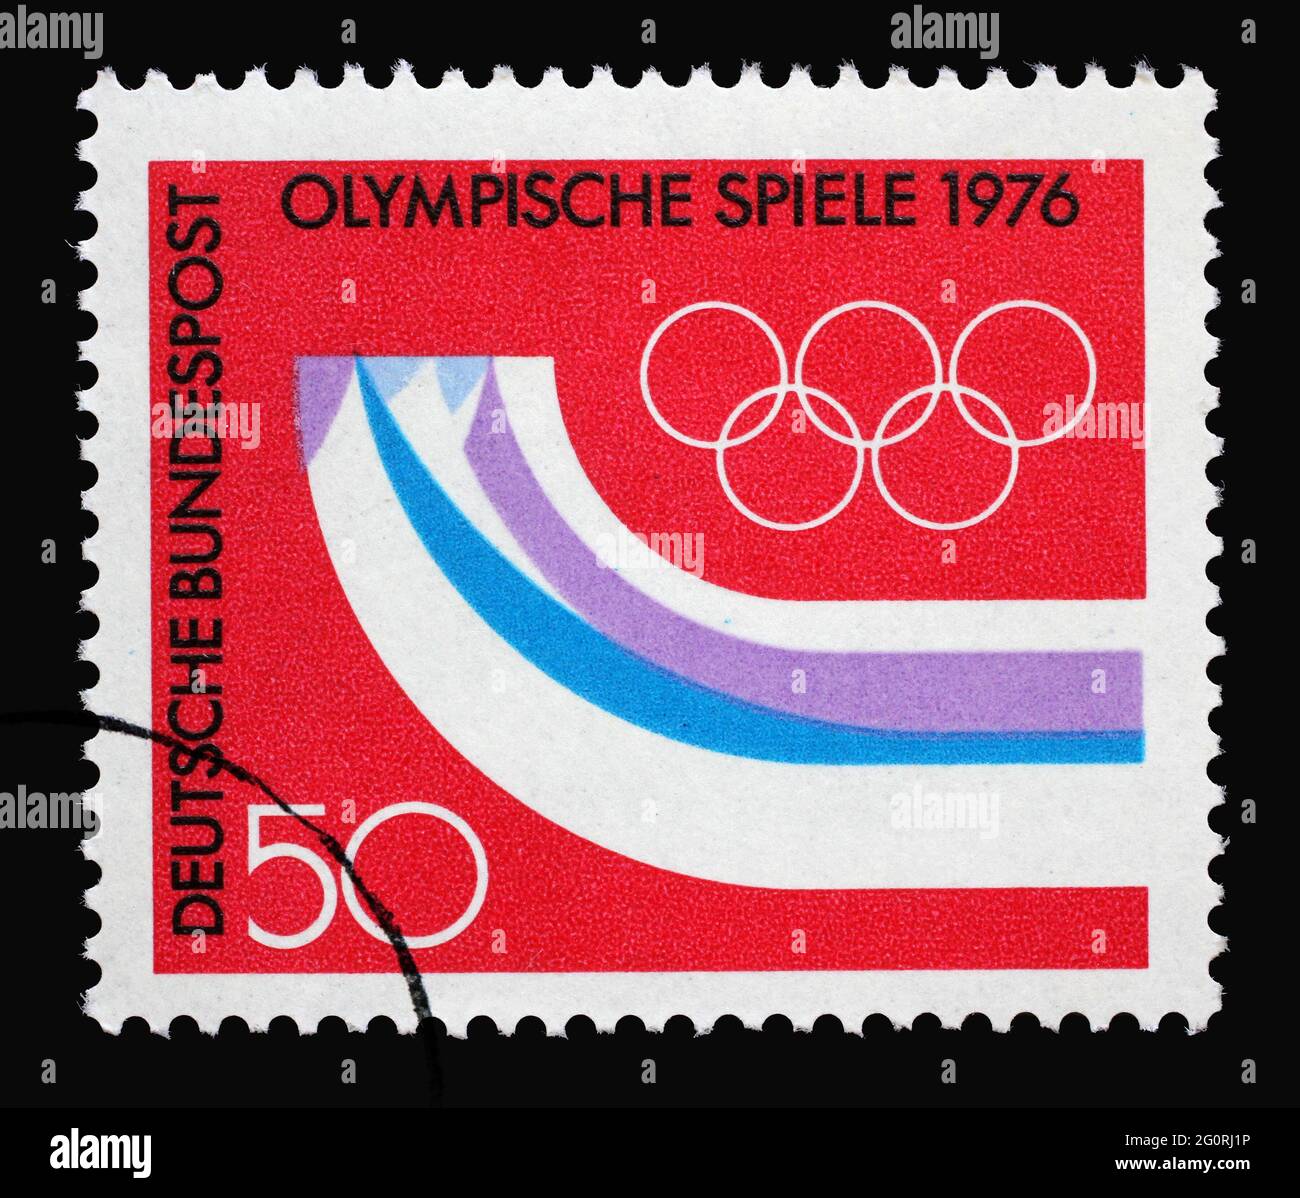 Un timbre imprimé en Allemagne montre des montagnes stylisées sous forme de coureurs, 12ème Jeux Olympiques d'hiver, Innsbruck Autriche, vers 1976 Banque D'Images